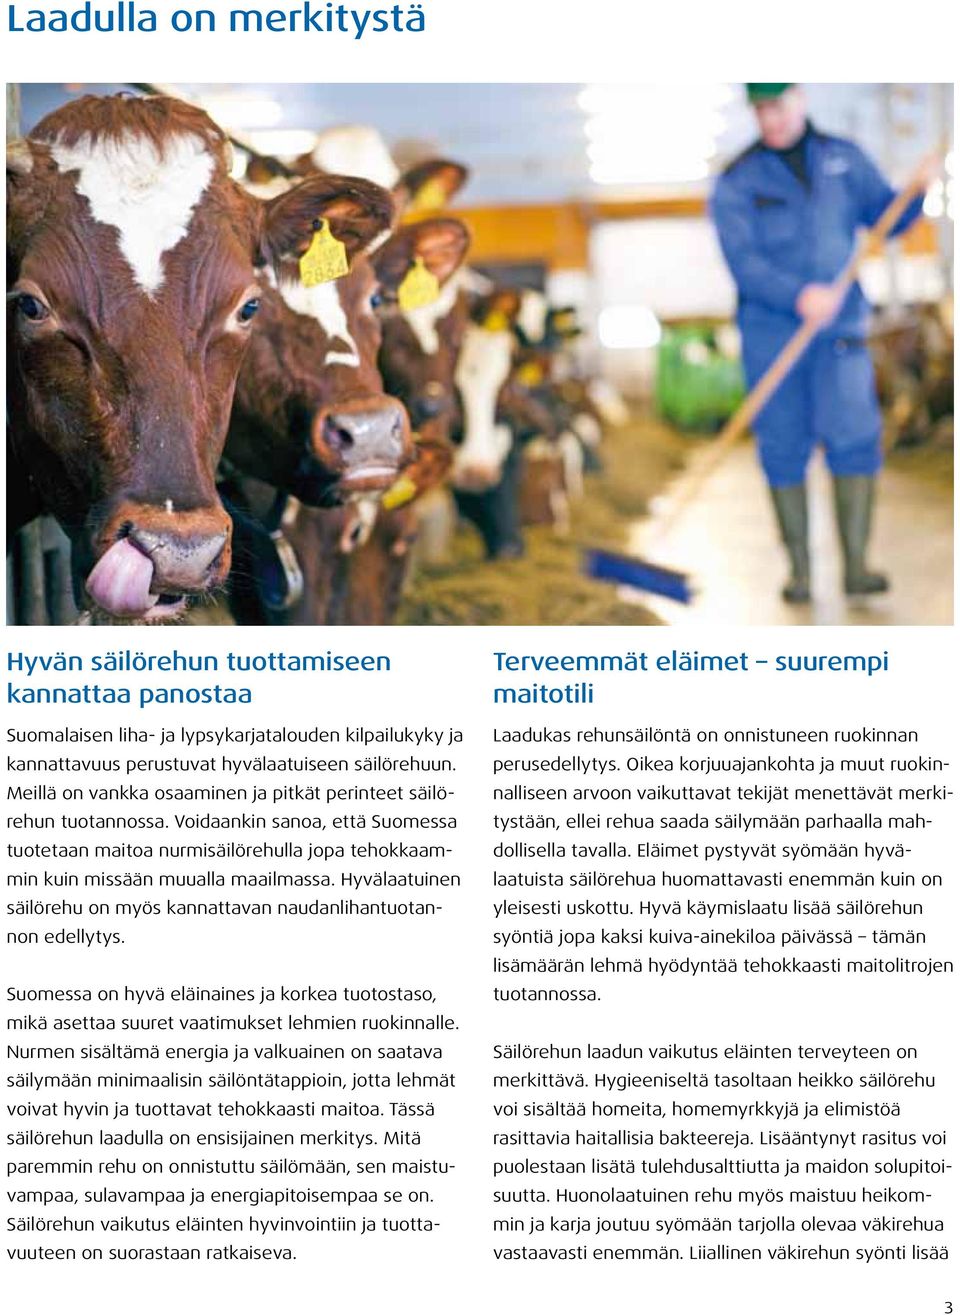 Hyvälaatuinen säilörehu on myös kannattavan naudanlihantuotannon edellytys. Suomessa on hyvä eläinaines ja korkea tuotostaso, mikä asettaa suuret vaatimukset lehmien ruokinnalle.